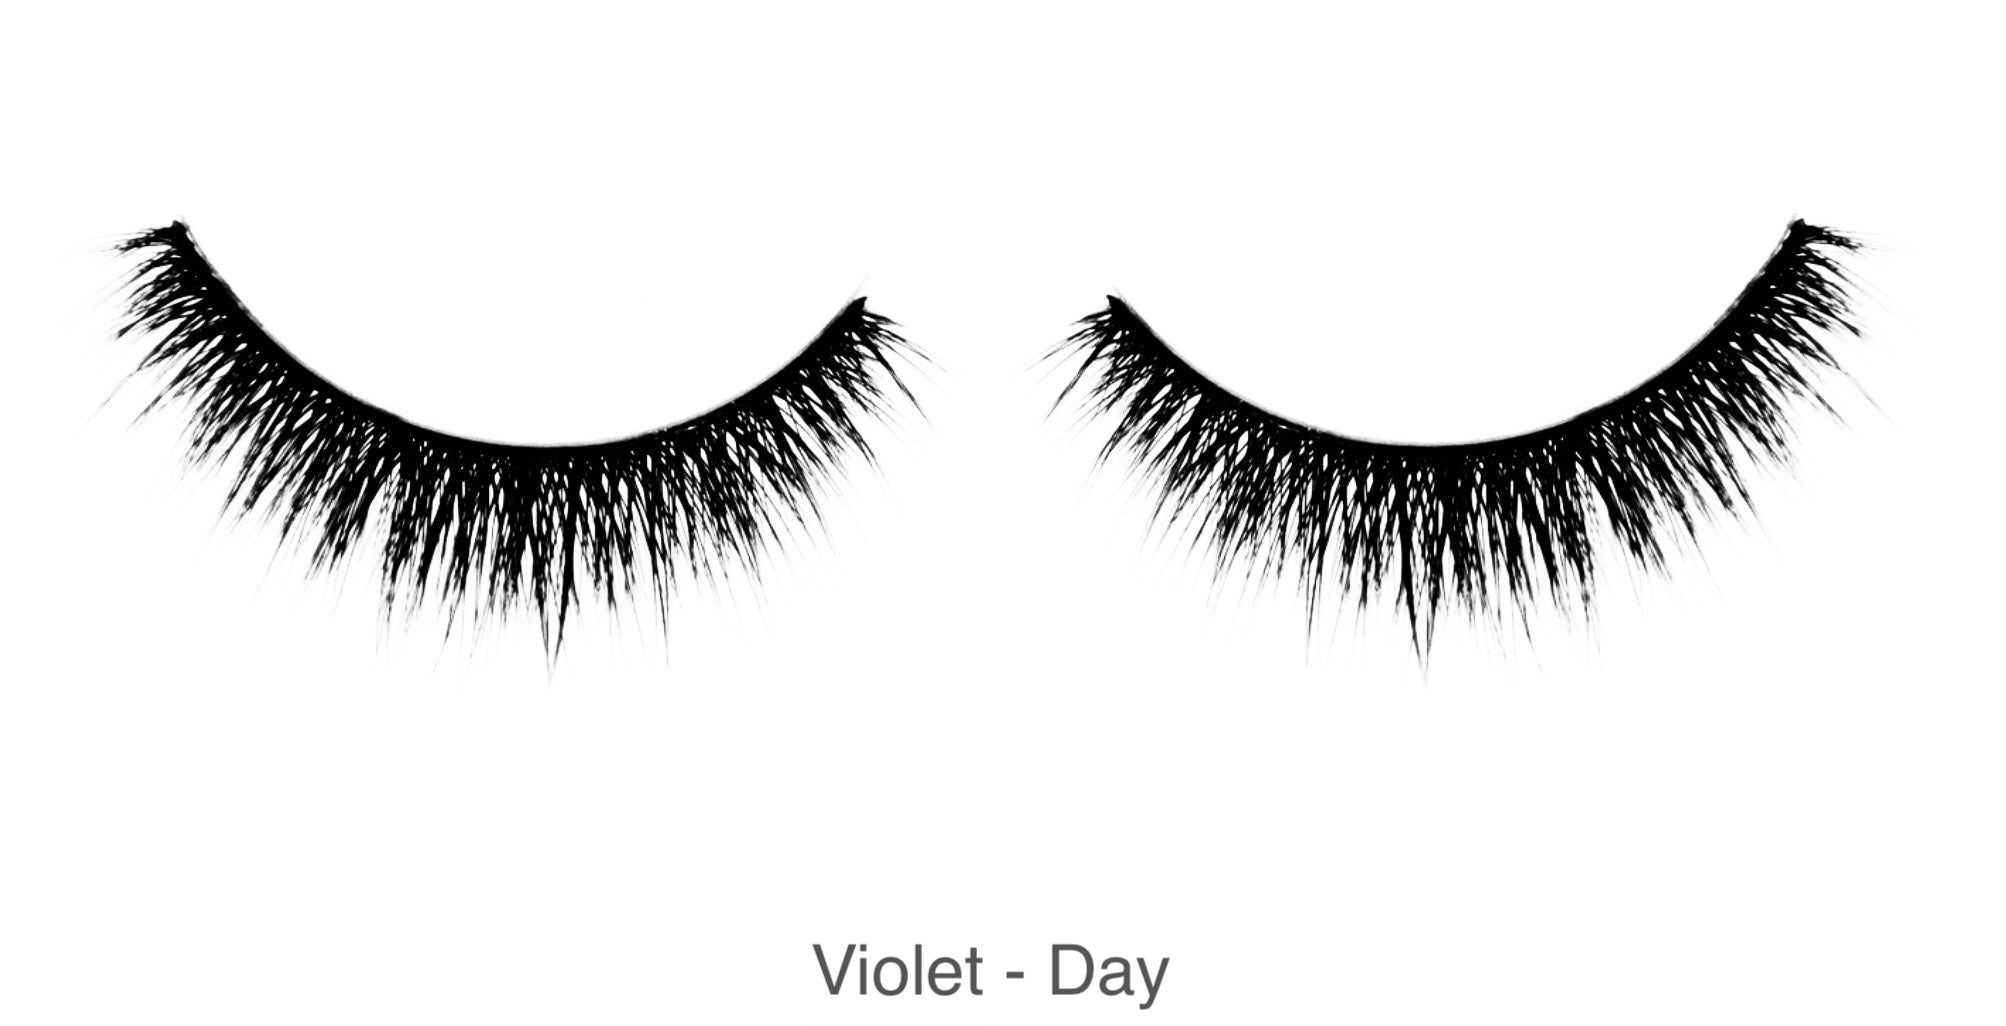 Violet - Day